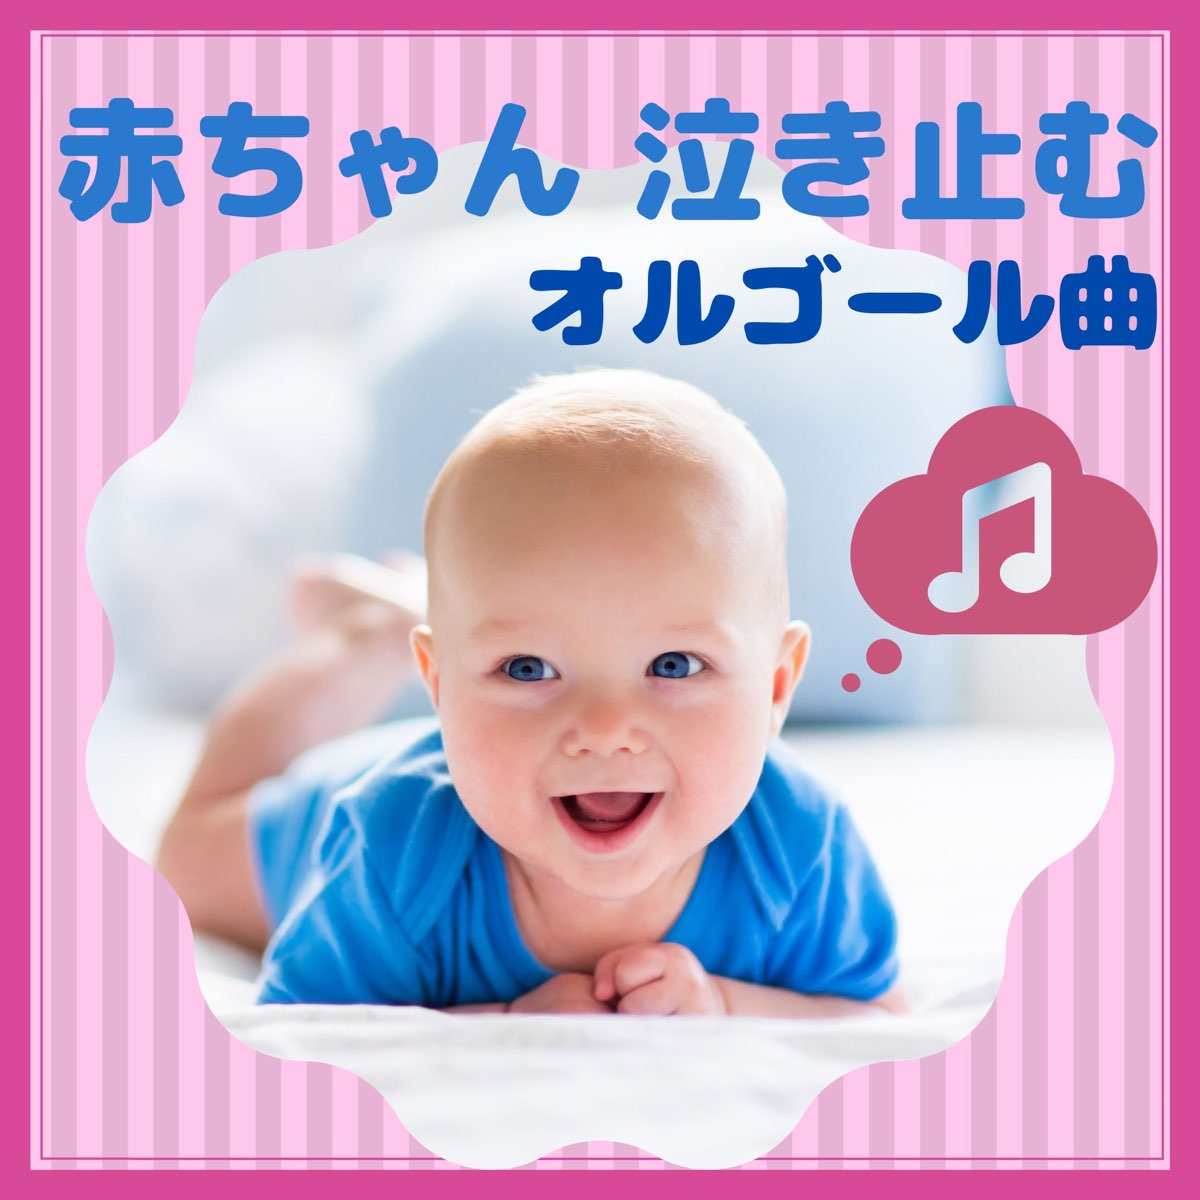 赤ちゃん 泣き止むオルゴール曲 心が落ち着くサウンド 子育て 新生児 By 赤ちゃん オルゴール On Apple Music